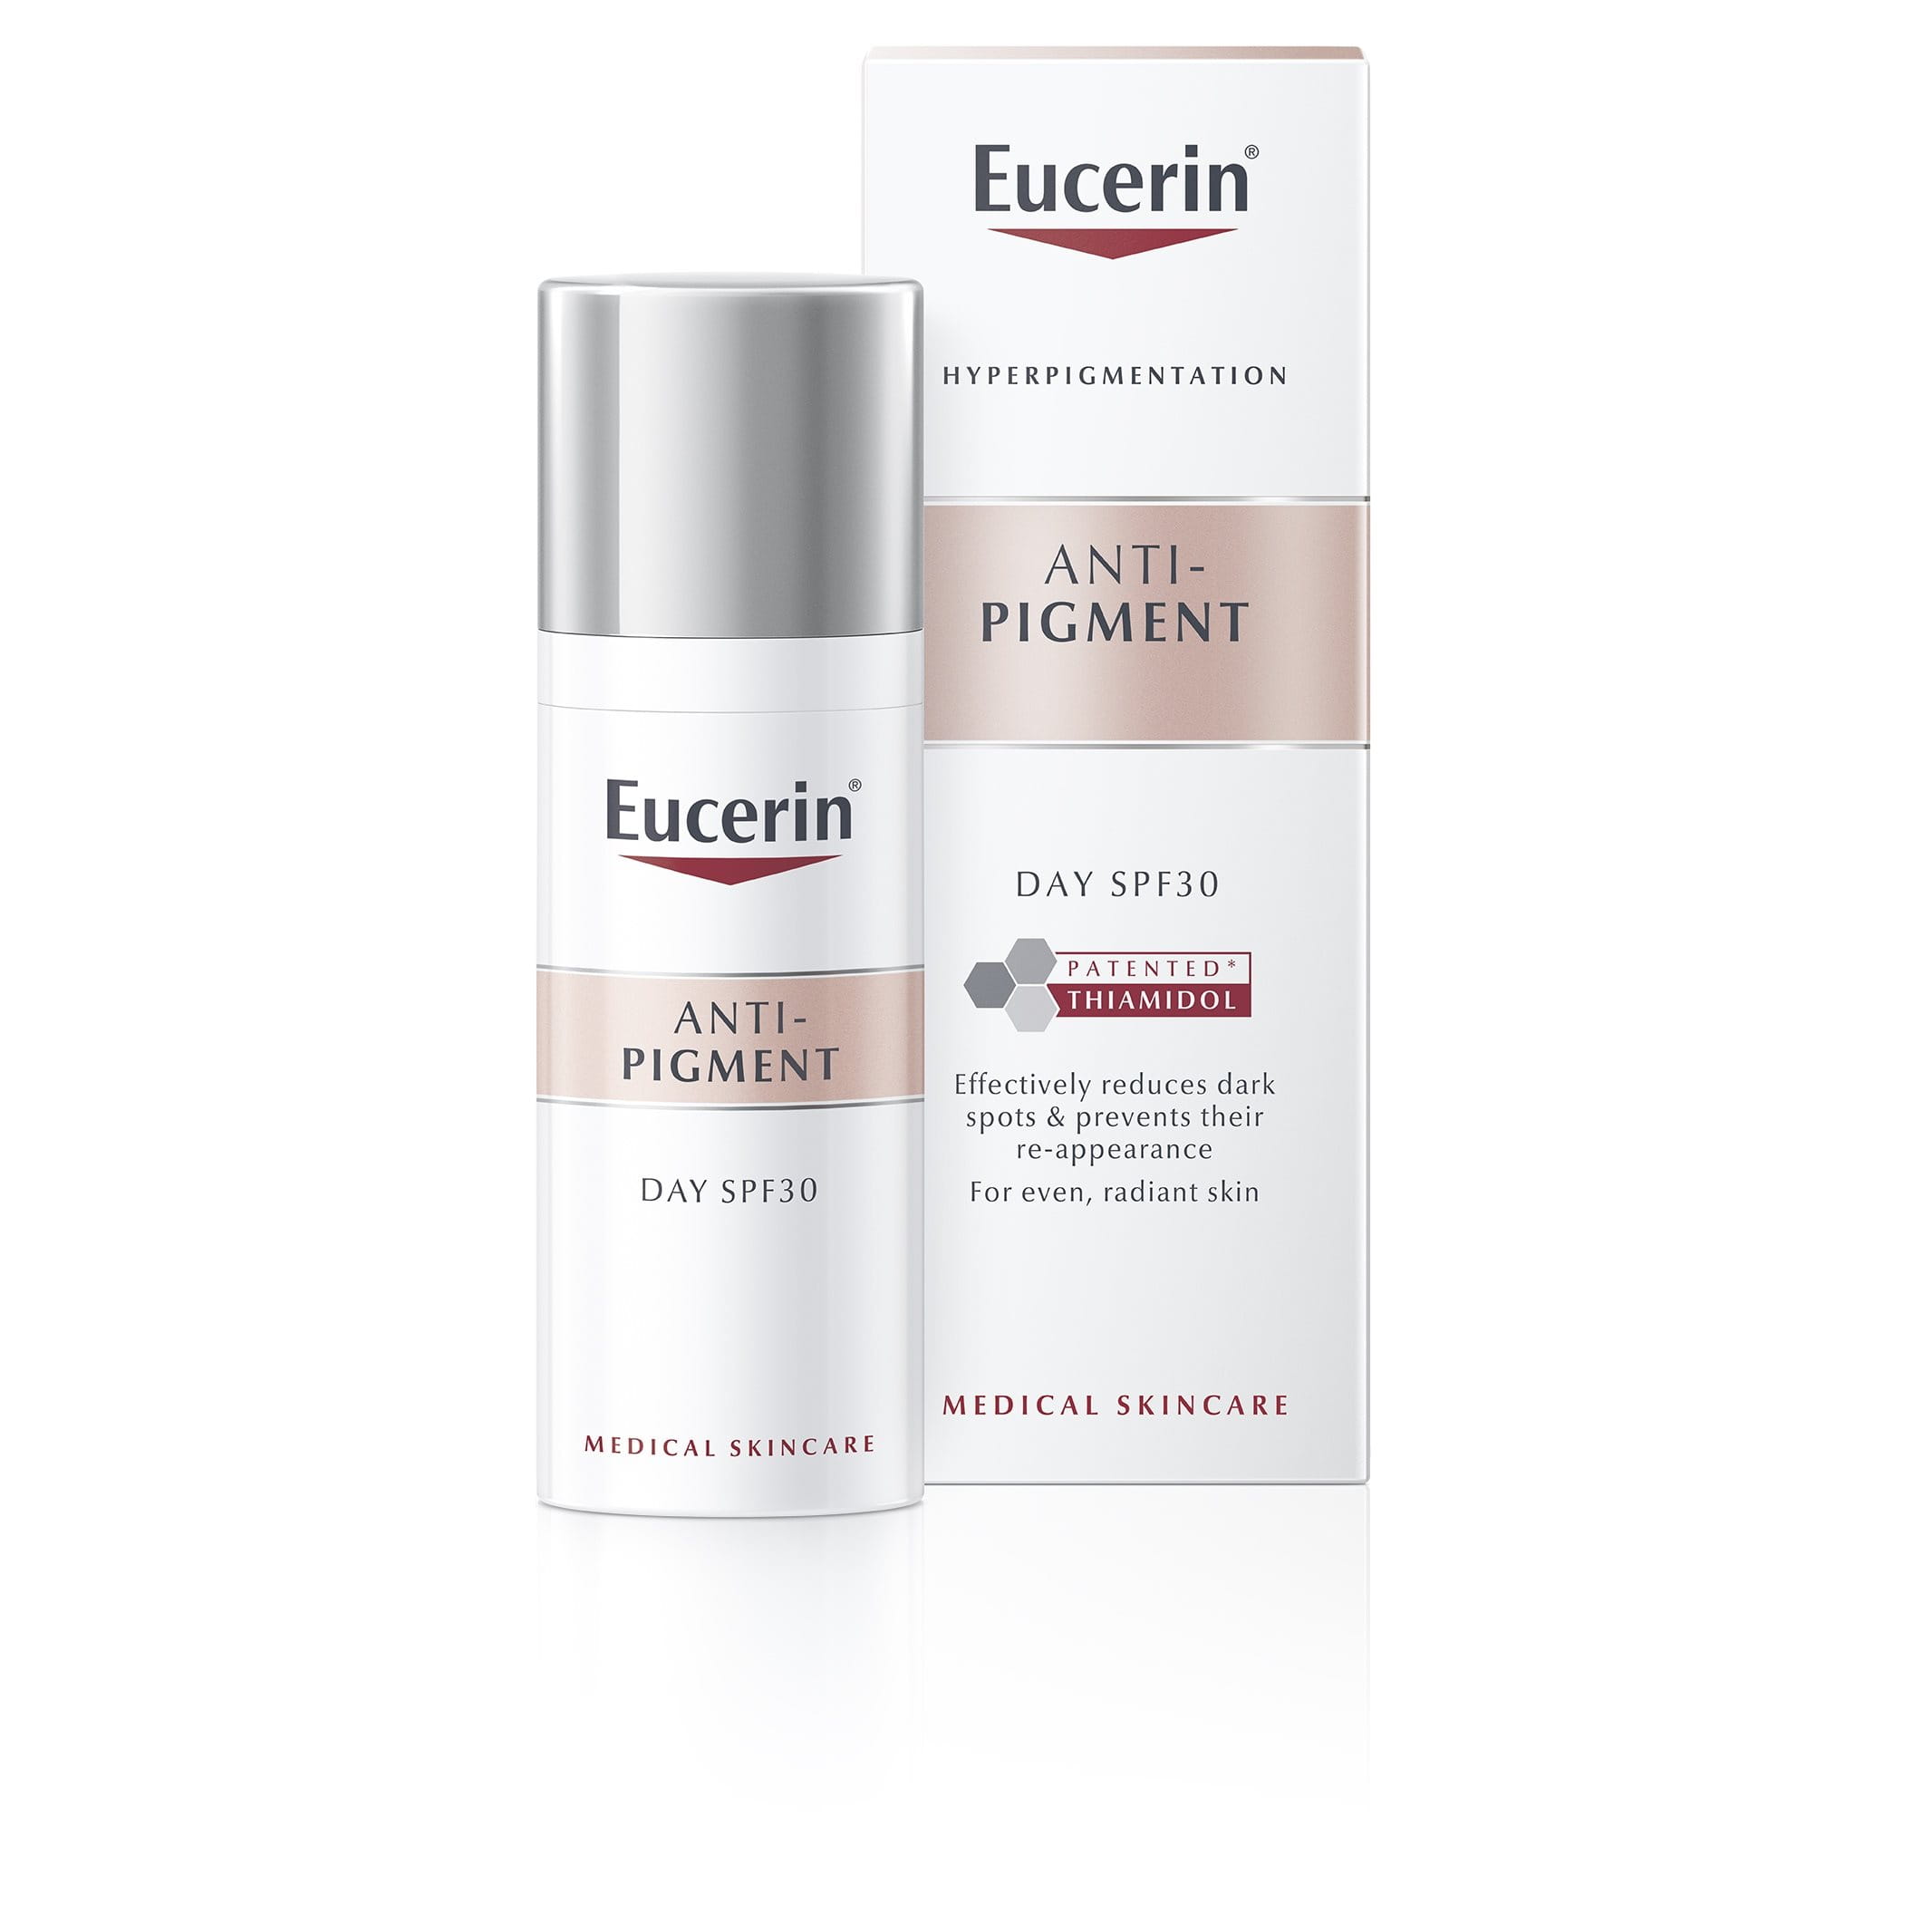 Eucerin Anti-Pigment Day Cream SPF 30